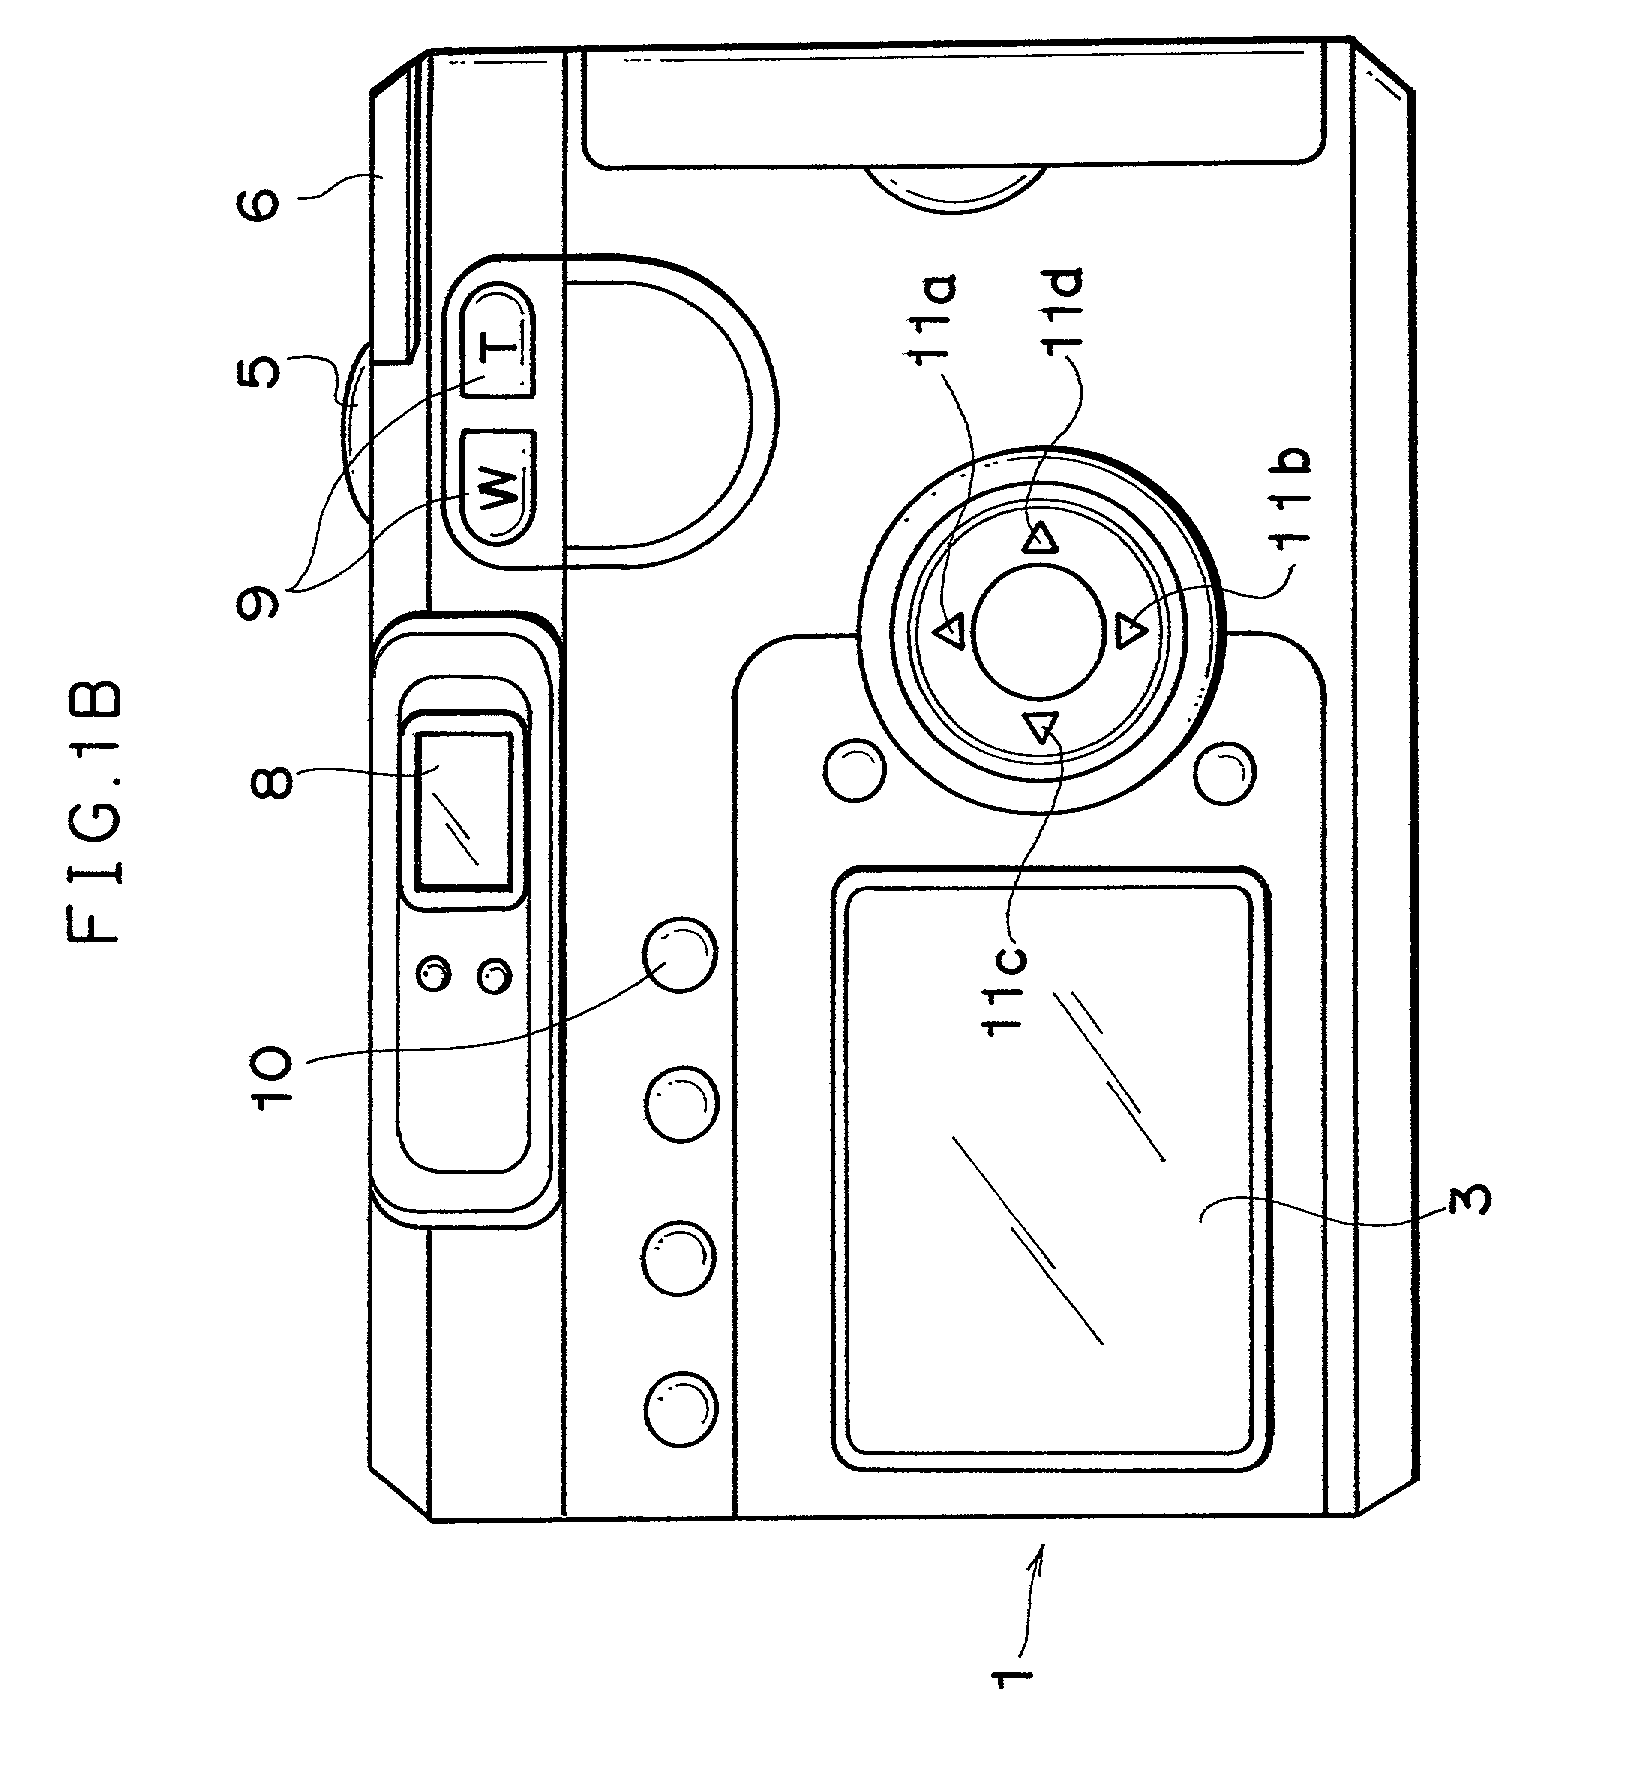 Electronic camera